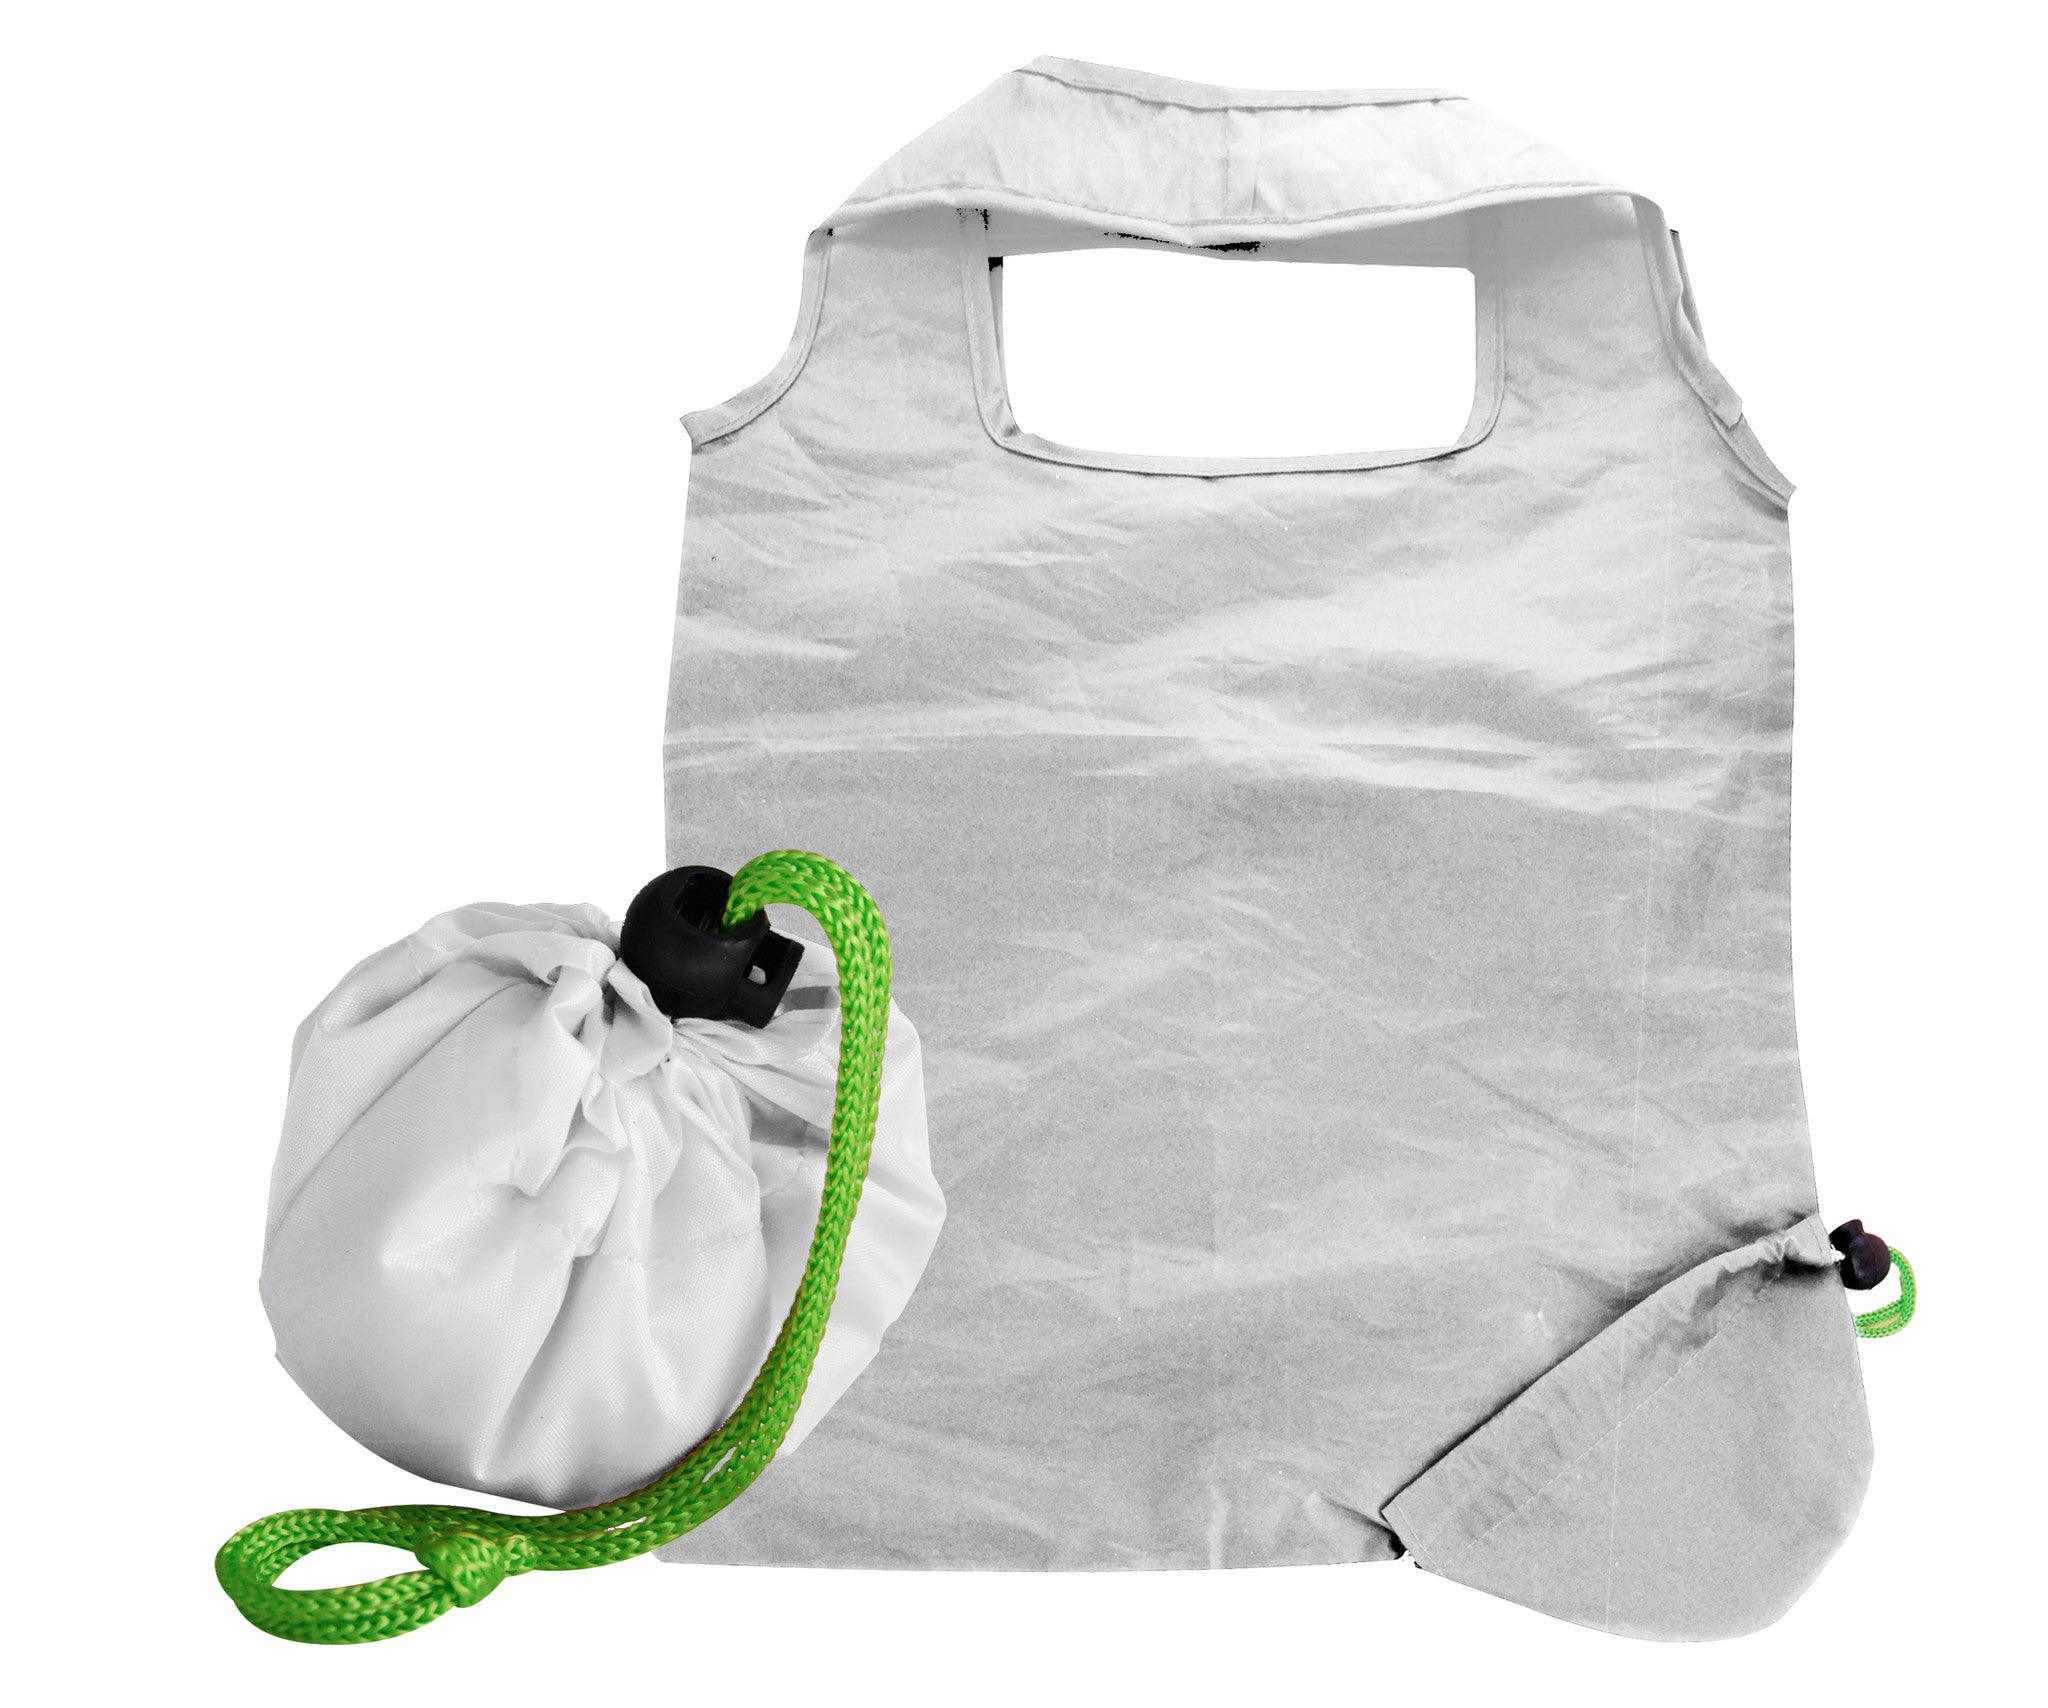 White foldaway shopping bag